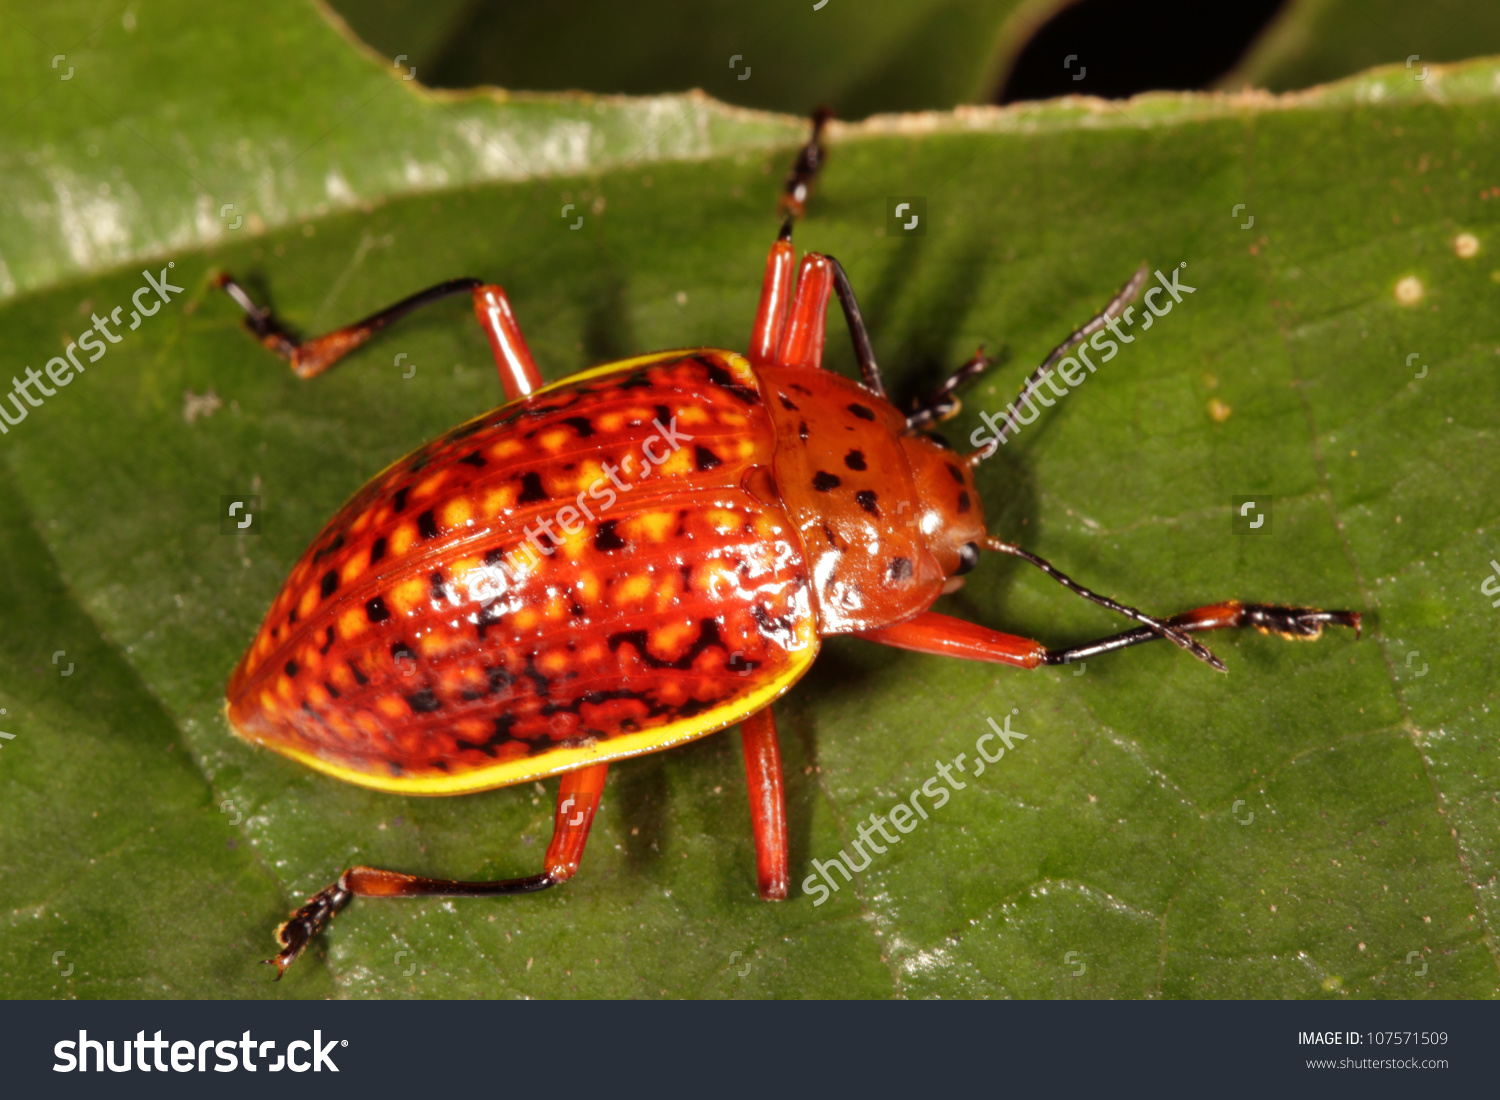 Orange Tortoise Beetle Chrysomelidae On Leaf Stock Photo 107571509.